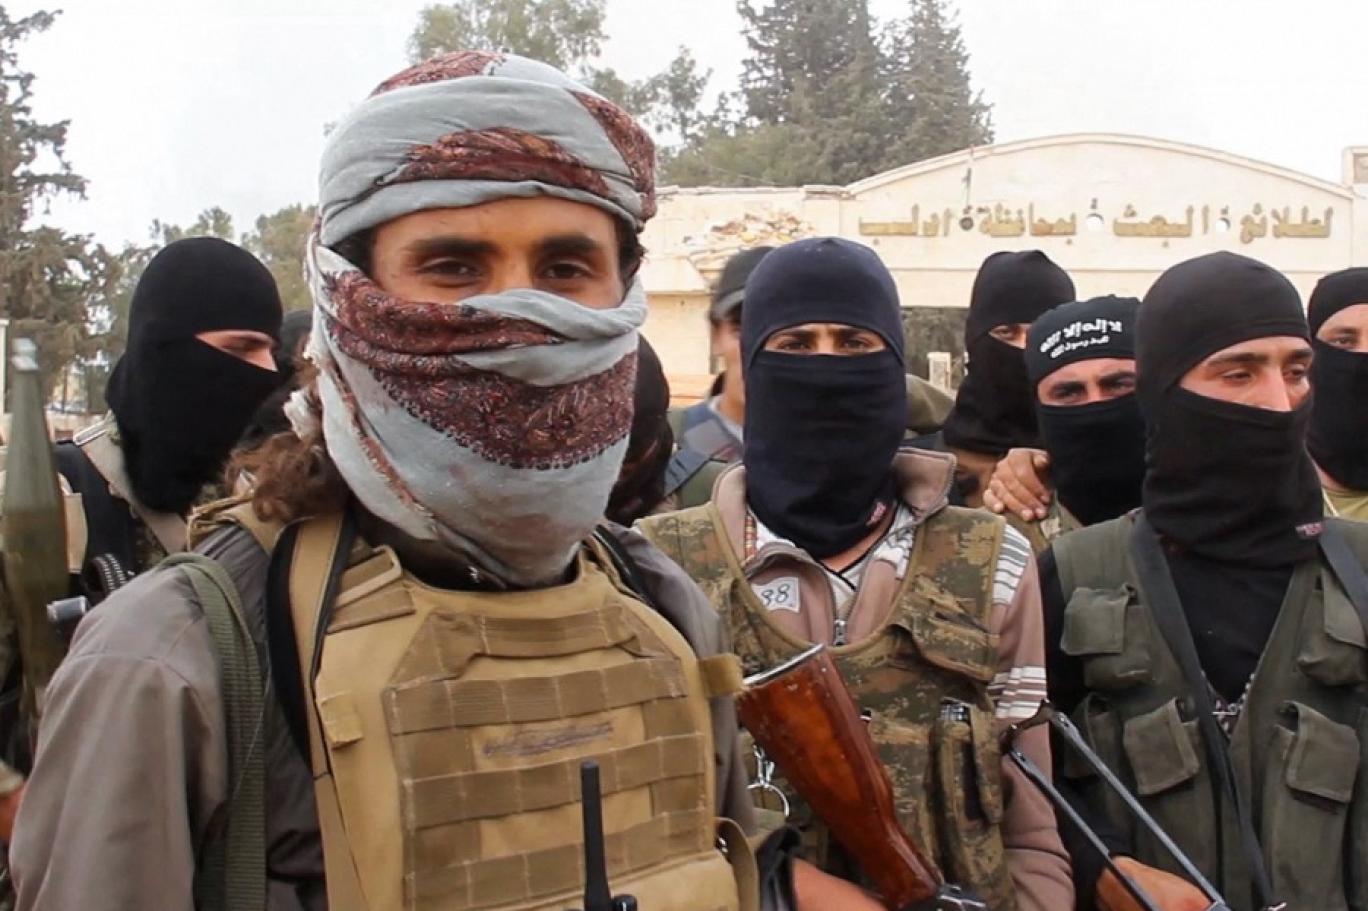 دوافع توجيه ضربات متتالية لتنظيم “حراس الدين” في سوريا